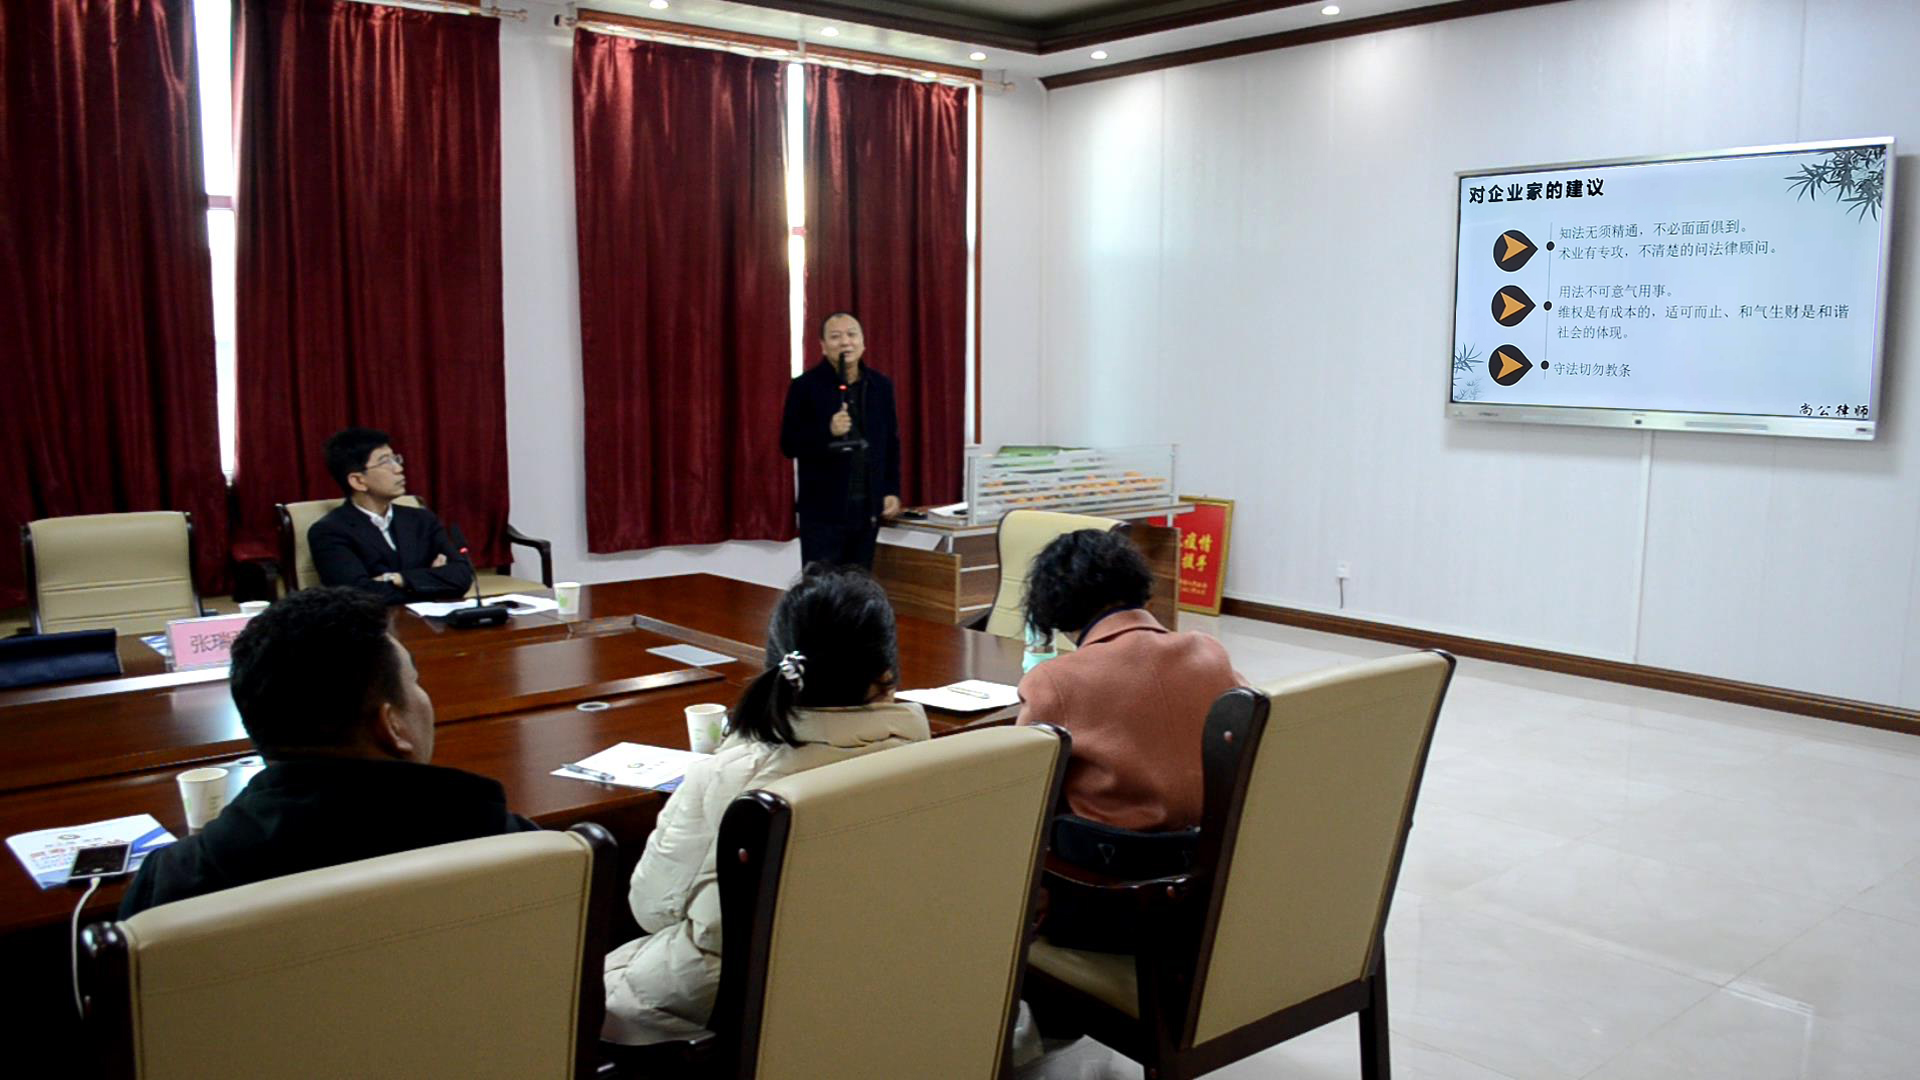 石家庄市委统战部举办第一期“感受制度优势、增强制度自信”主题活动